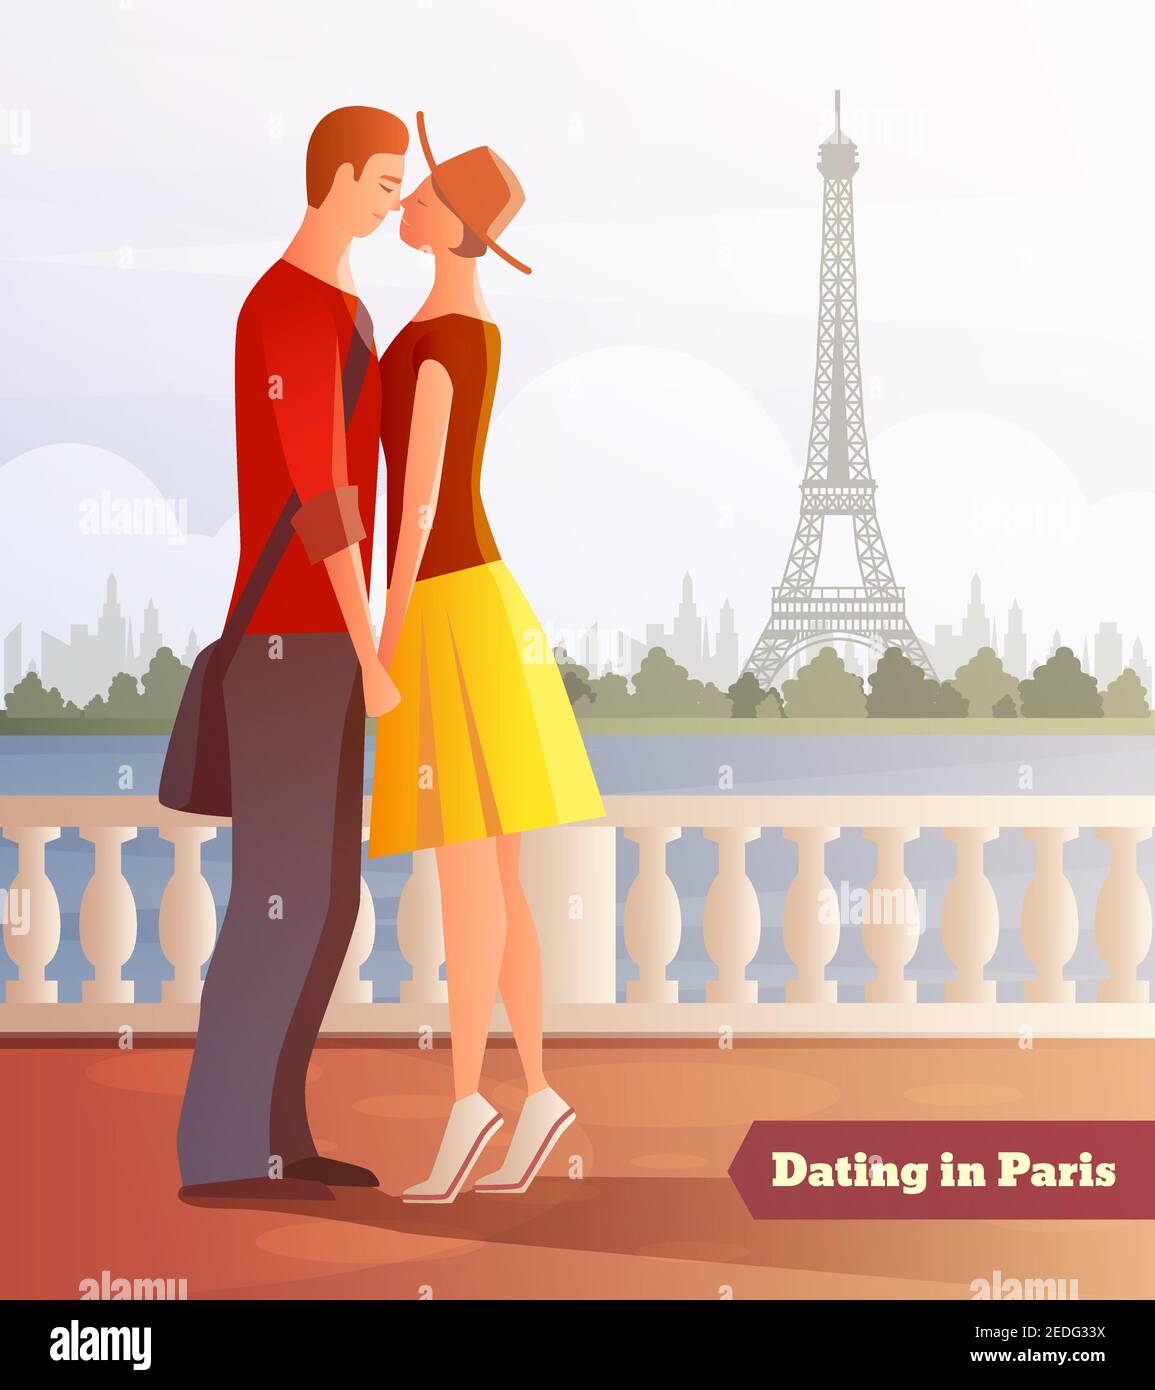 Dîner romantique datant couples composition plate avec personnages humains Illustration vectorielle de la vue sur la rive de la rivière et la tour Eiffel Illustration de Vecteur